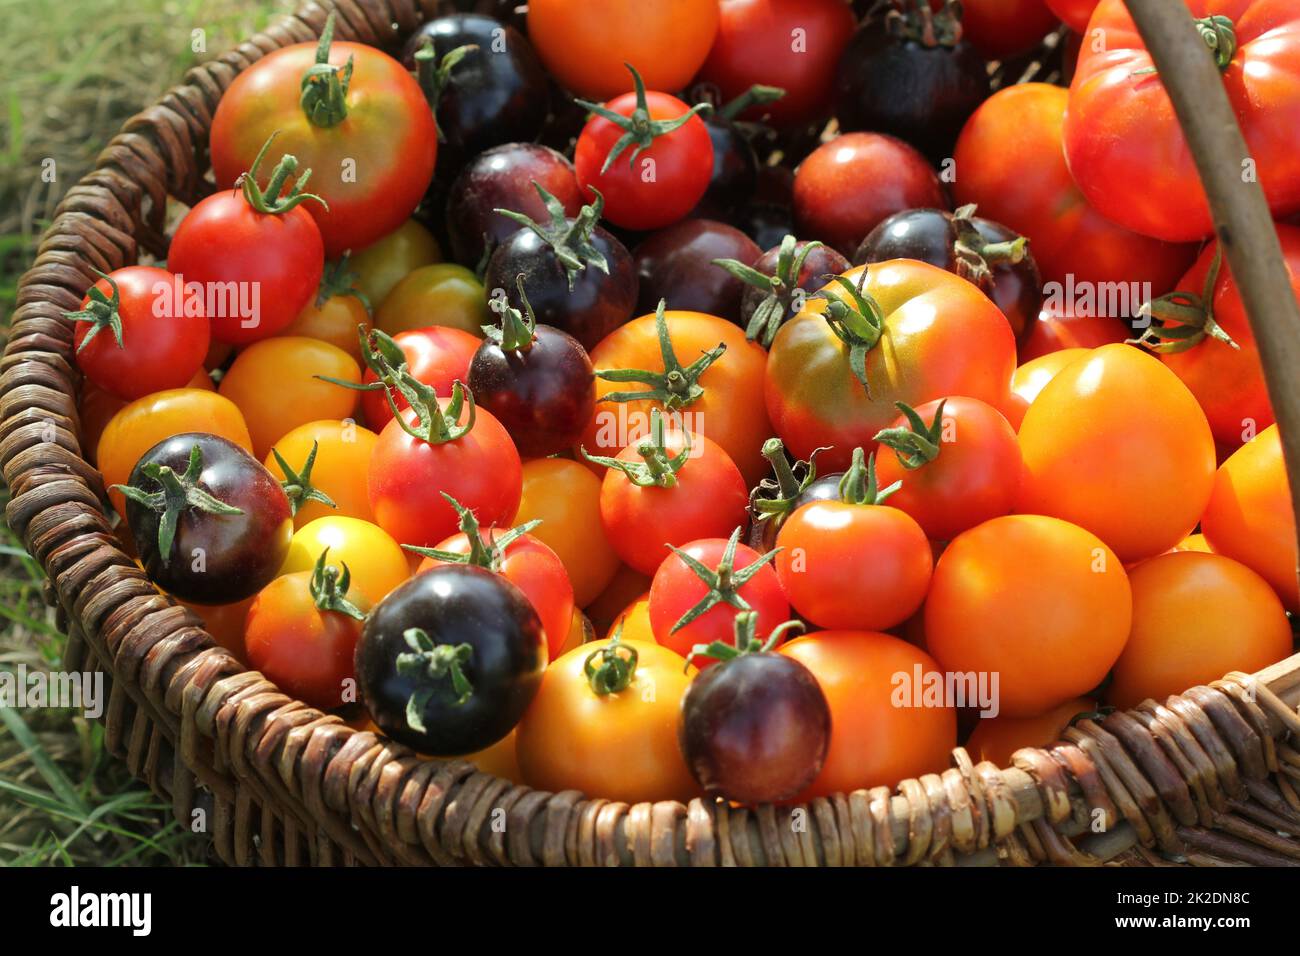 Erbsorten-Tomaten in Körben auf einem rustikalen Tisch. Bunte Tomaten - rot, gelb, schwarz, orange. Gemüseküche-Konzeption Stockfoto